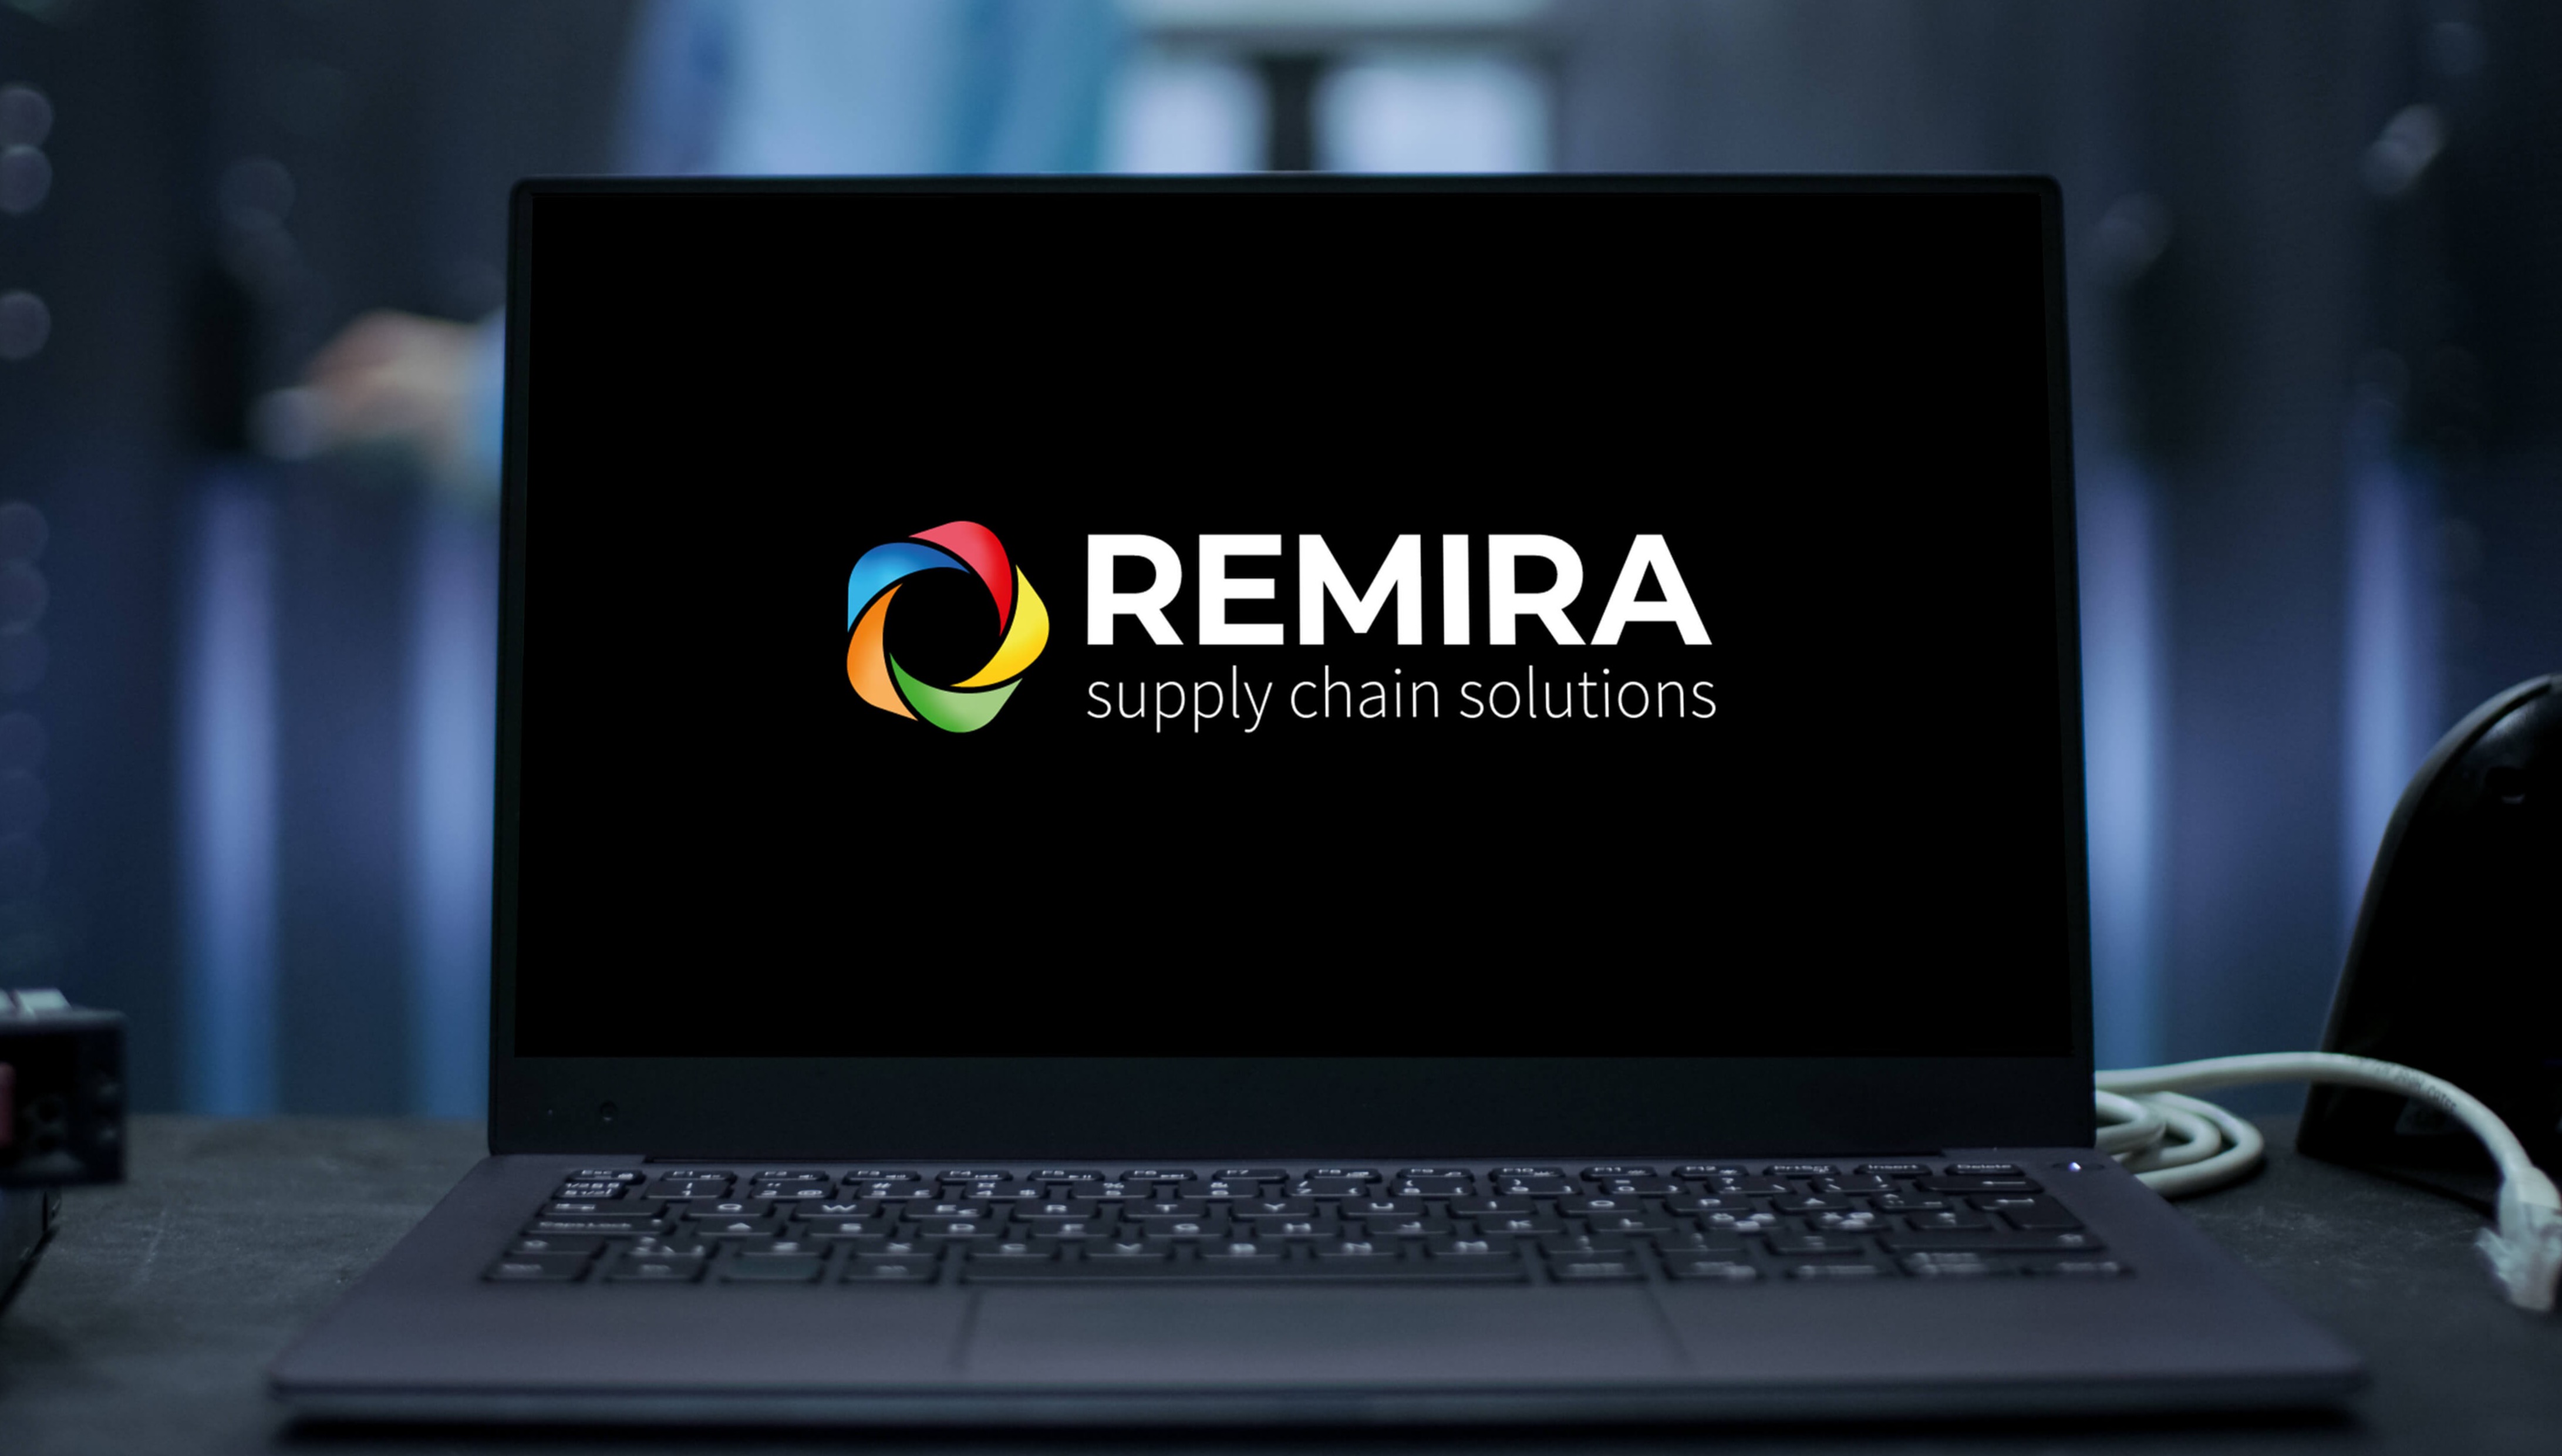 REMIRA supply chain solutions rebranding